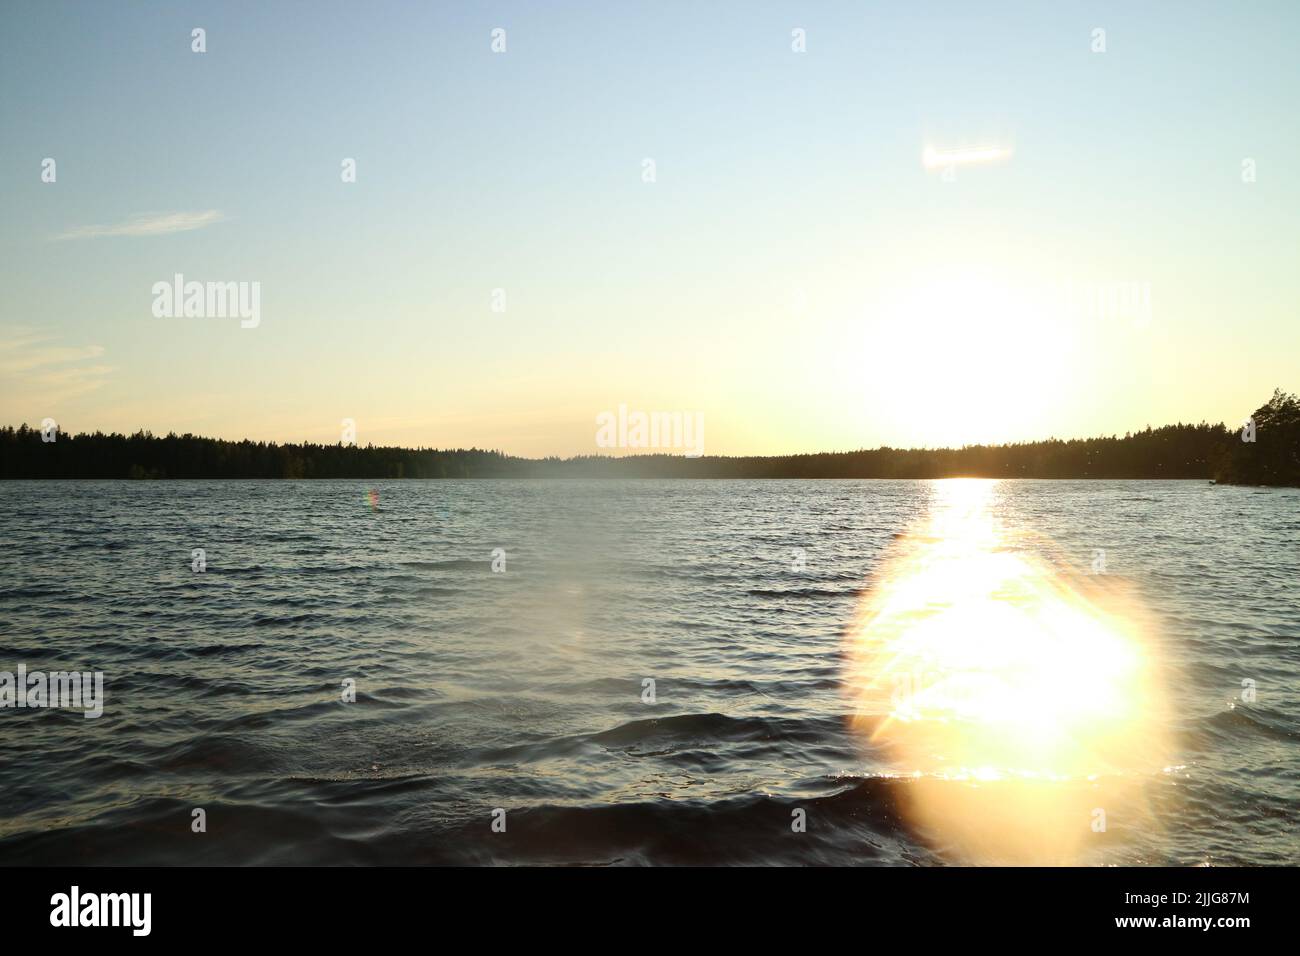 Lake Meiko in Meiko outdoor recreation area in Kirkkonummi, Finland as the sun begins to set Stock Photo